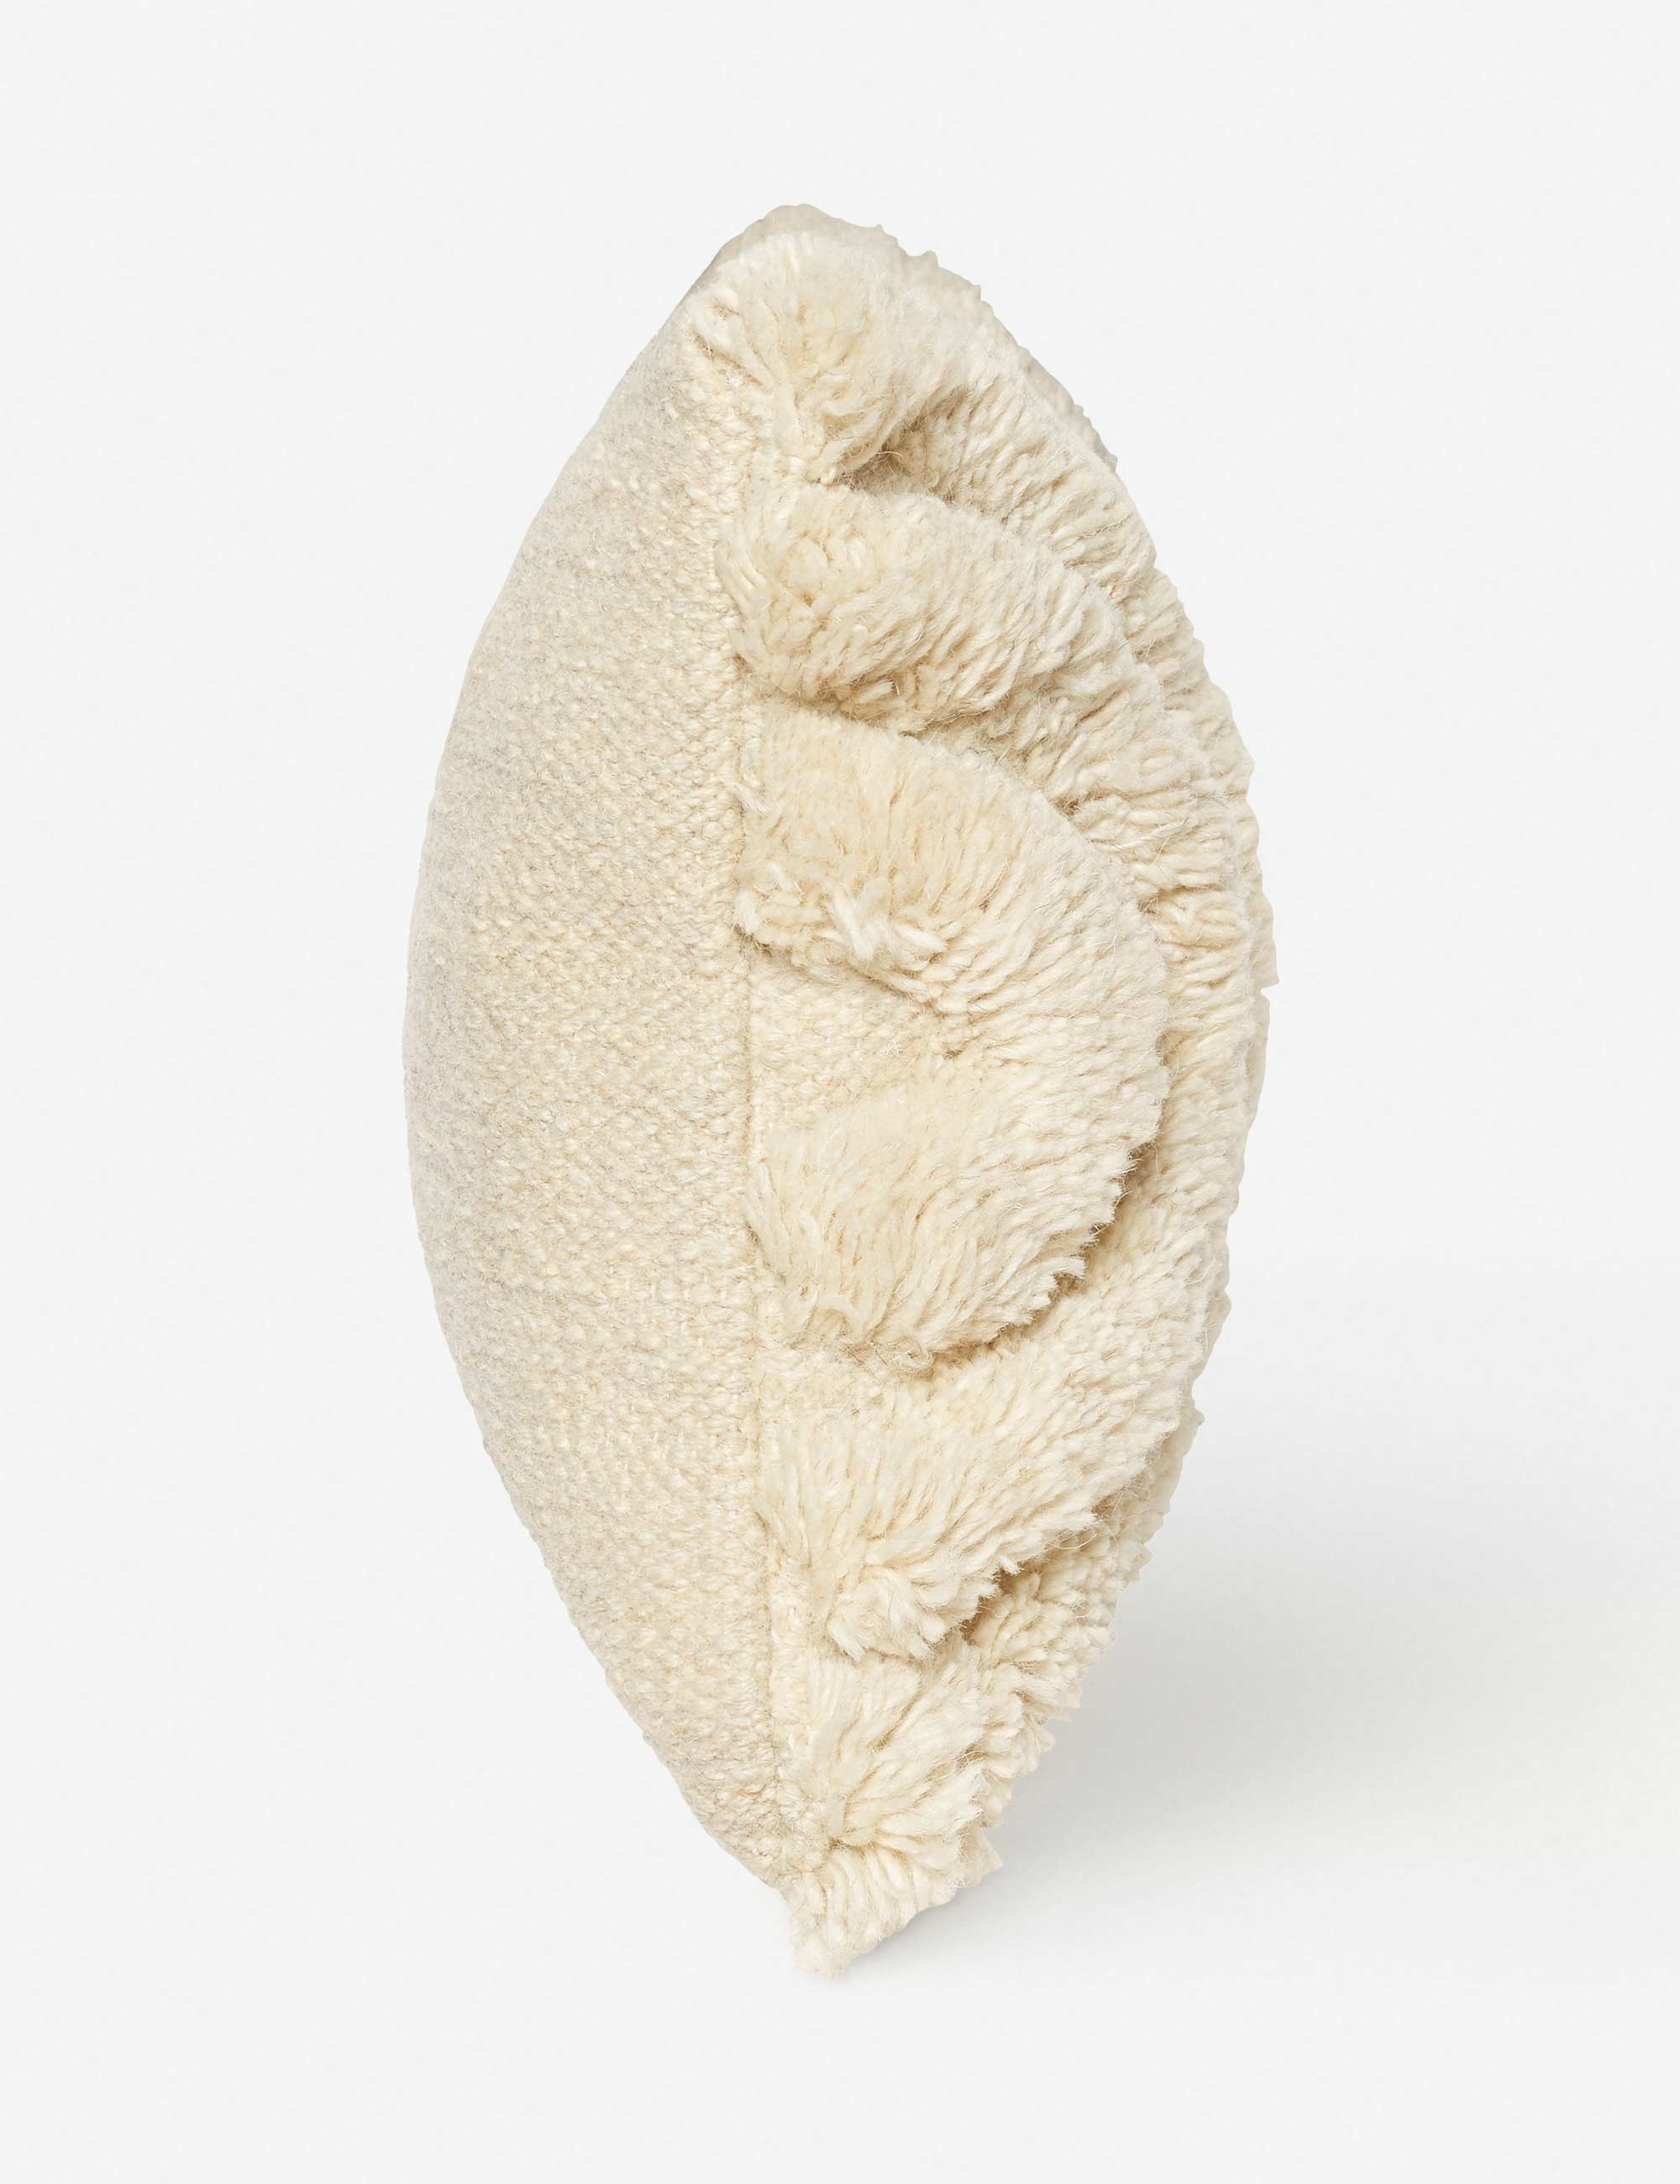 Arches Lumbar Pillow, Natural By Sarah Sherman Samuel - Image 4